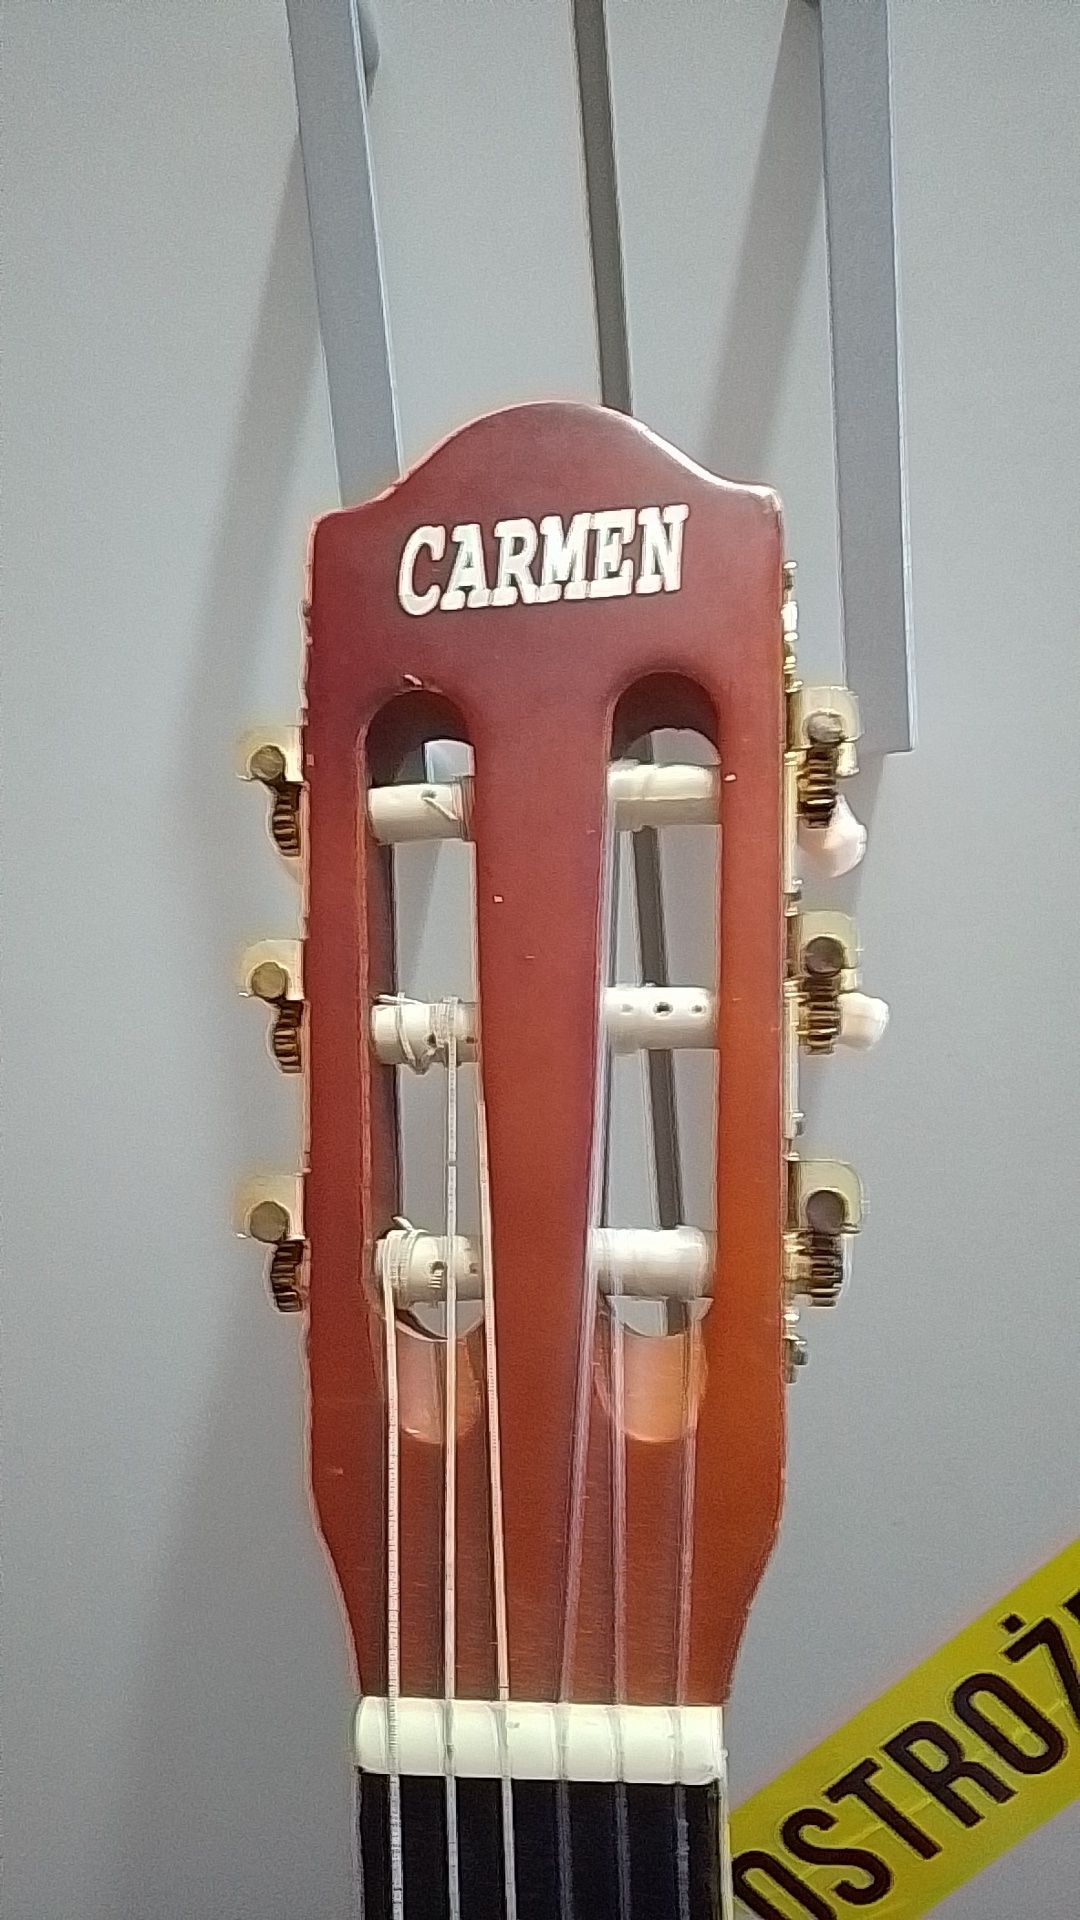 Gitara carmen z pokrowcem